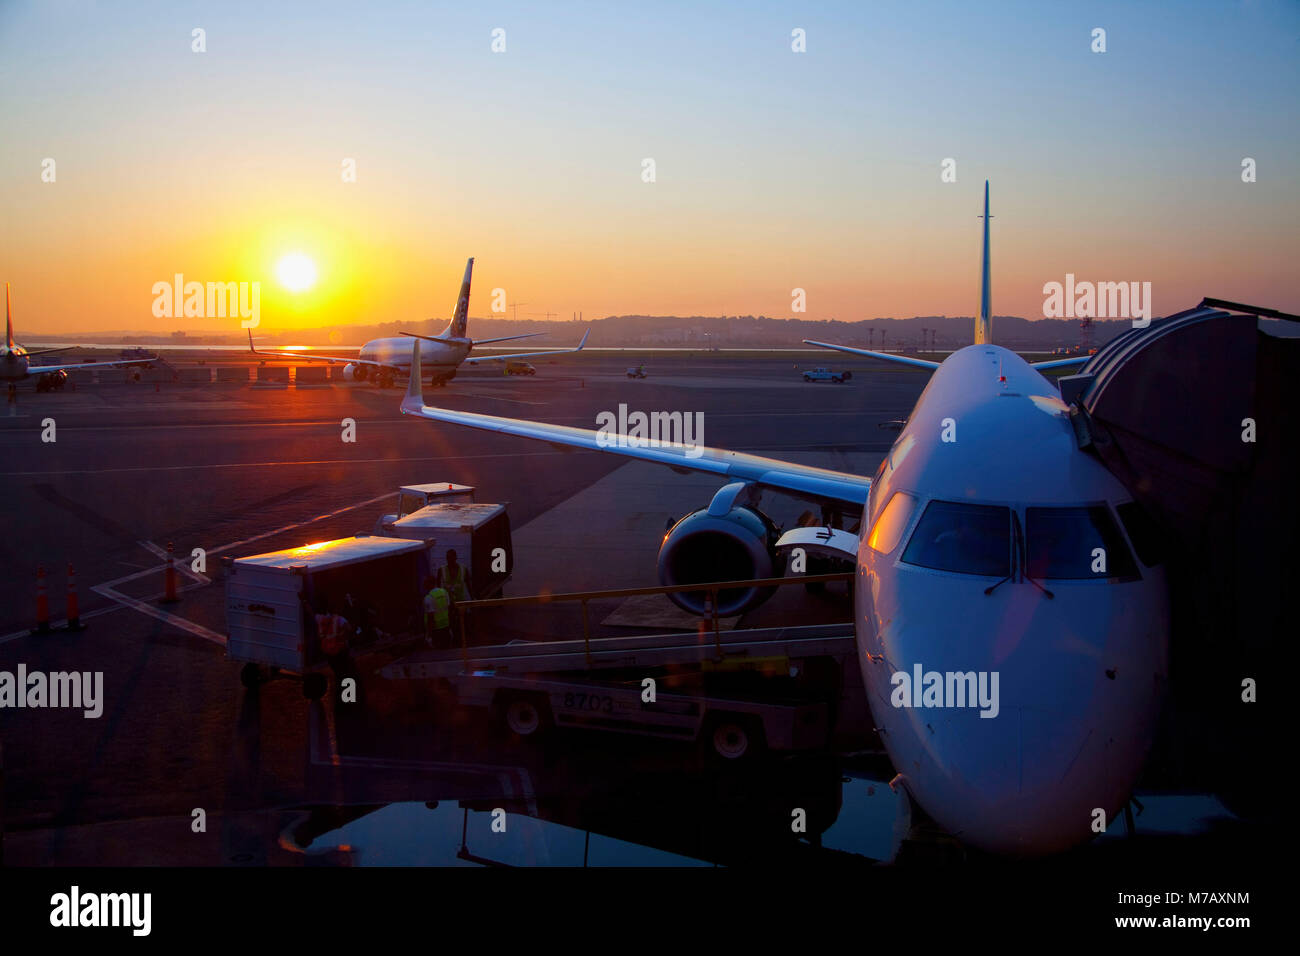 Airplanes at an airport at sunset, Ronald Reagan Washington National Airport, Washington DC, USA Stock Photo